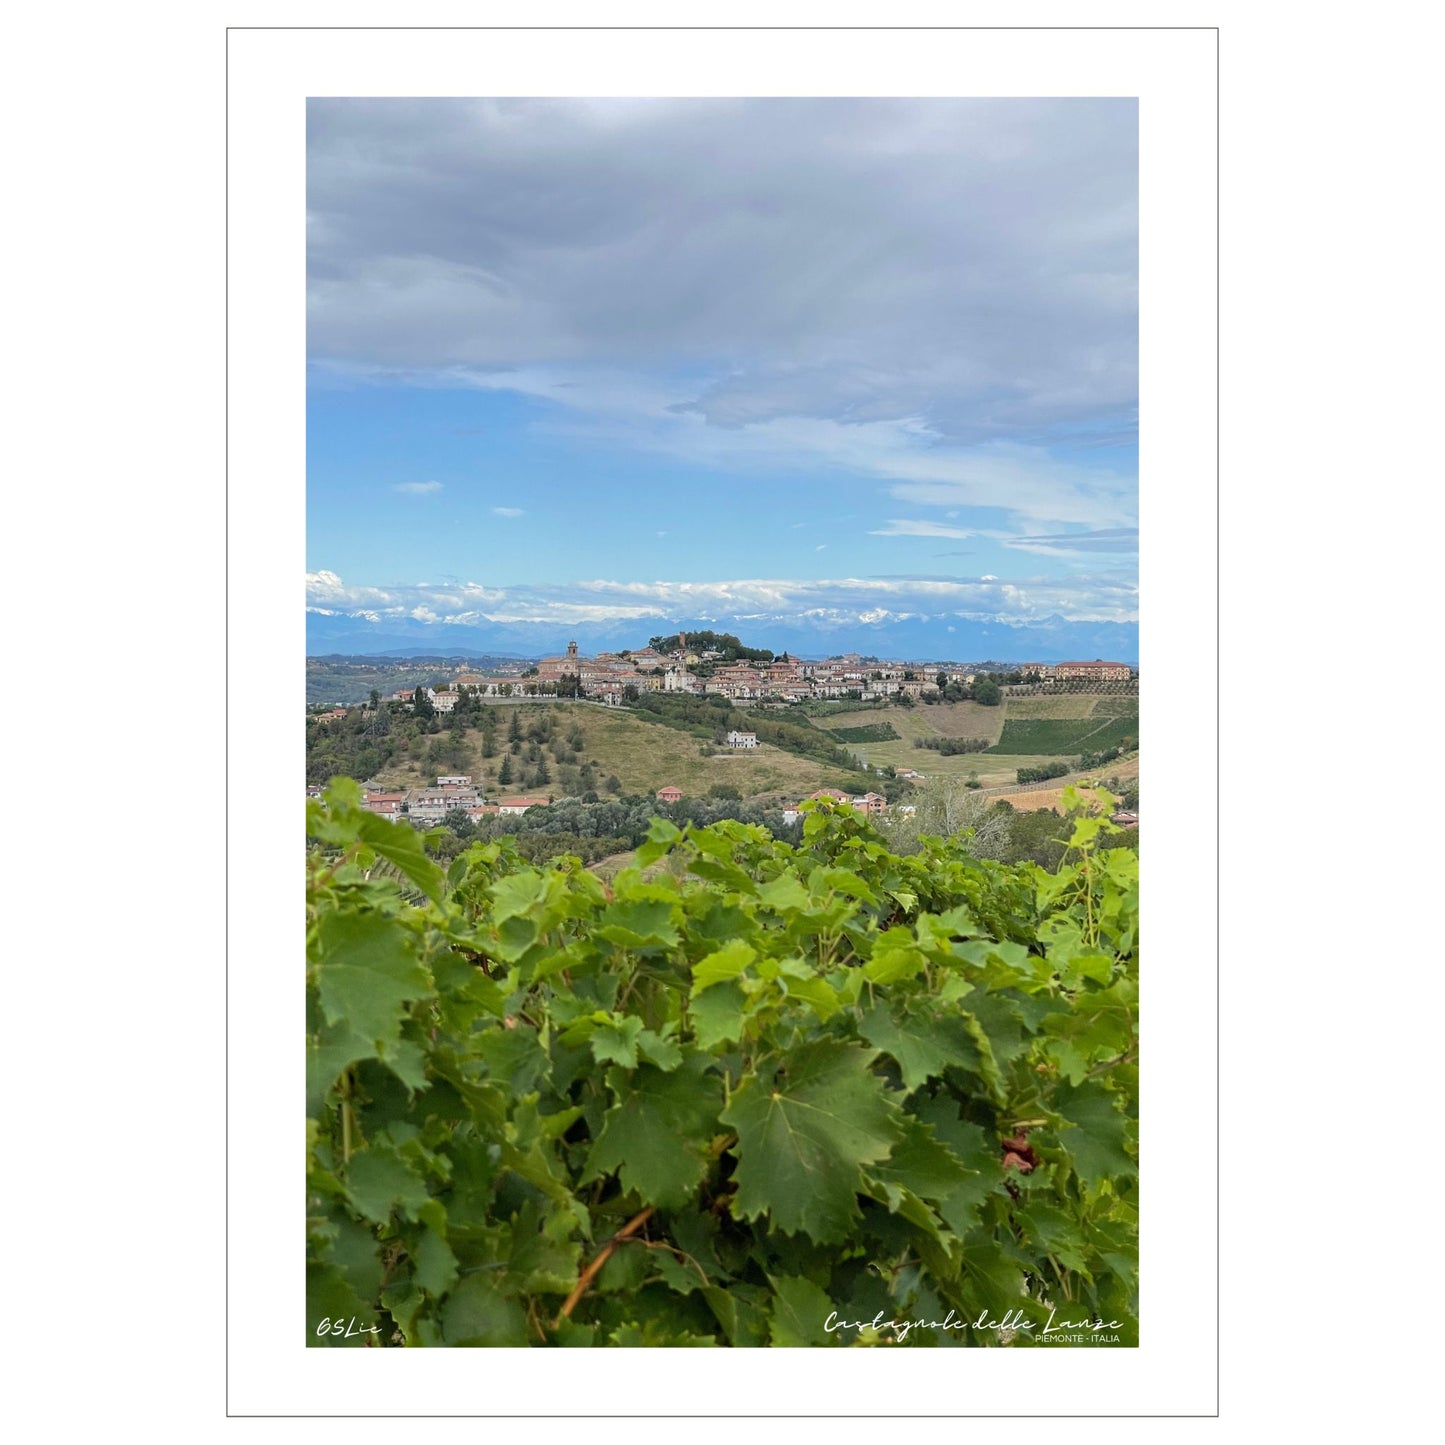 Castagnole delle Lanze, en pittoresk landsby som ligger midt i det vakre piemontesiske vinlandskapet. Byen er omkranset av vinmarker og i det fjerne skimtes Alpene.